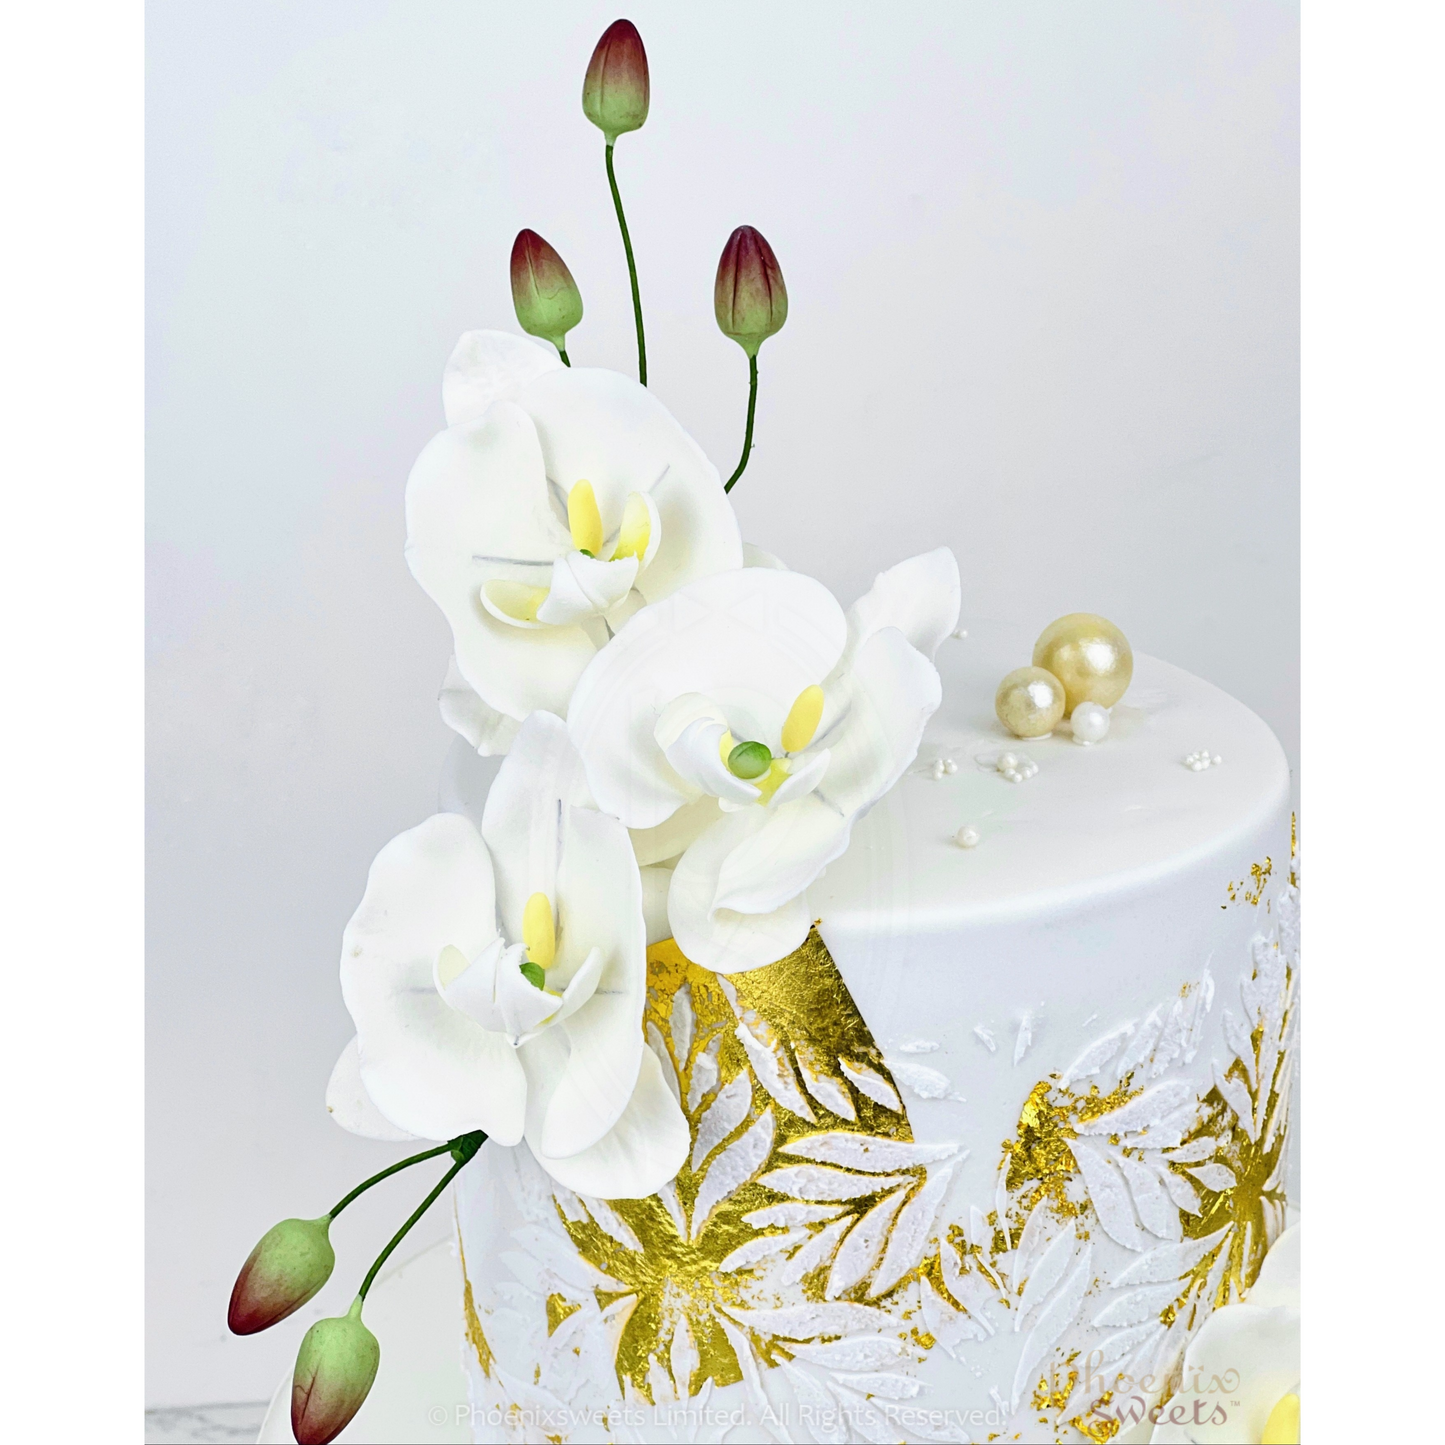 翻糖蛋糕 - Orchid Cake